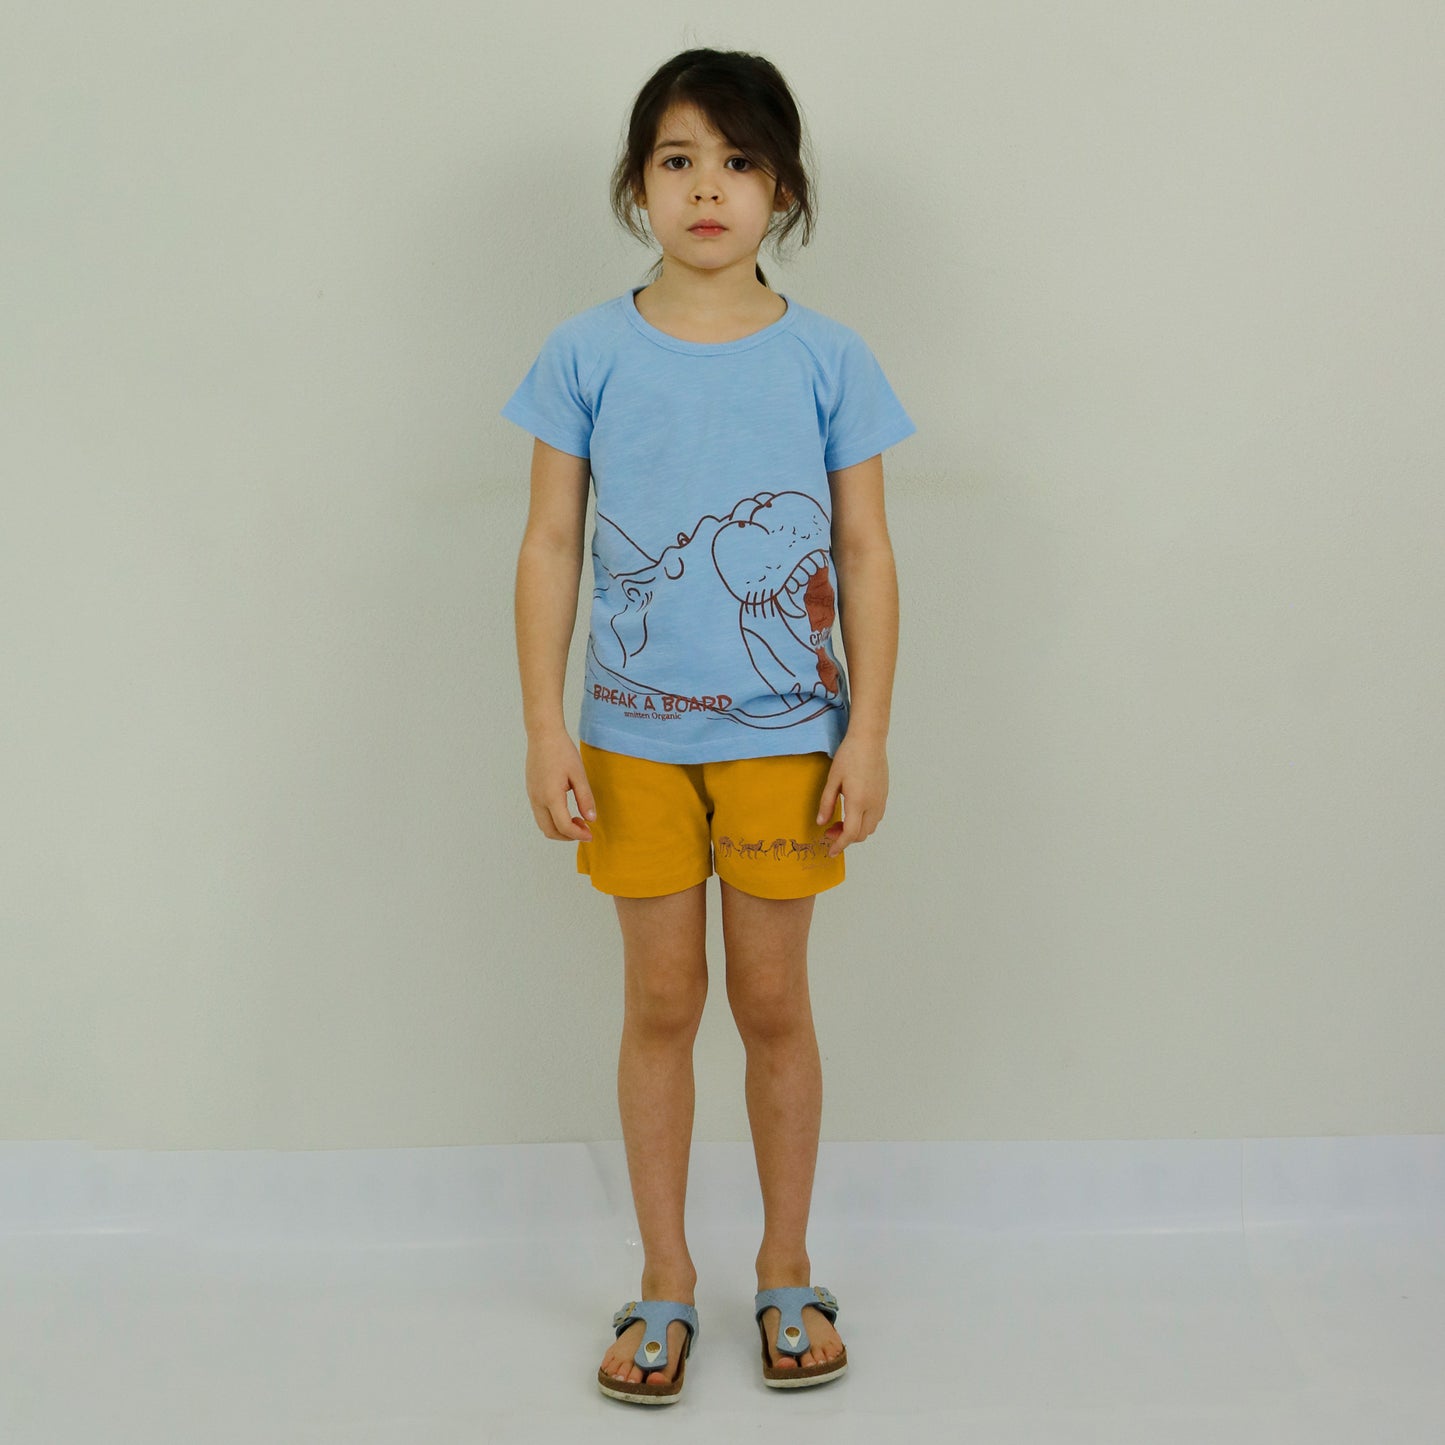 Kurzärmliges blaues T-Shirt des Flusspferds, das Skateboard knackt